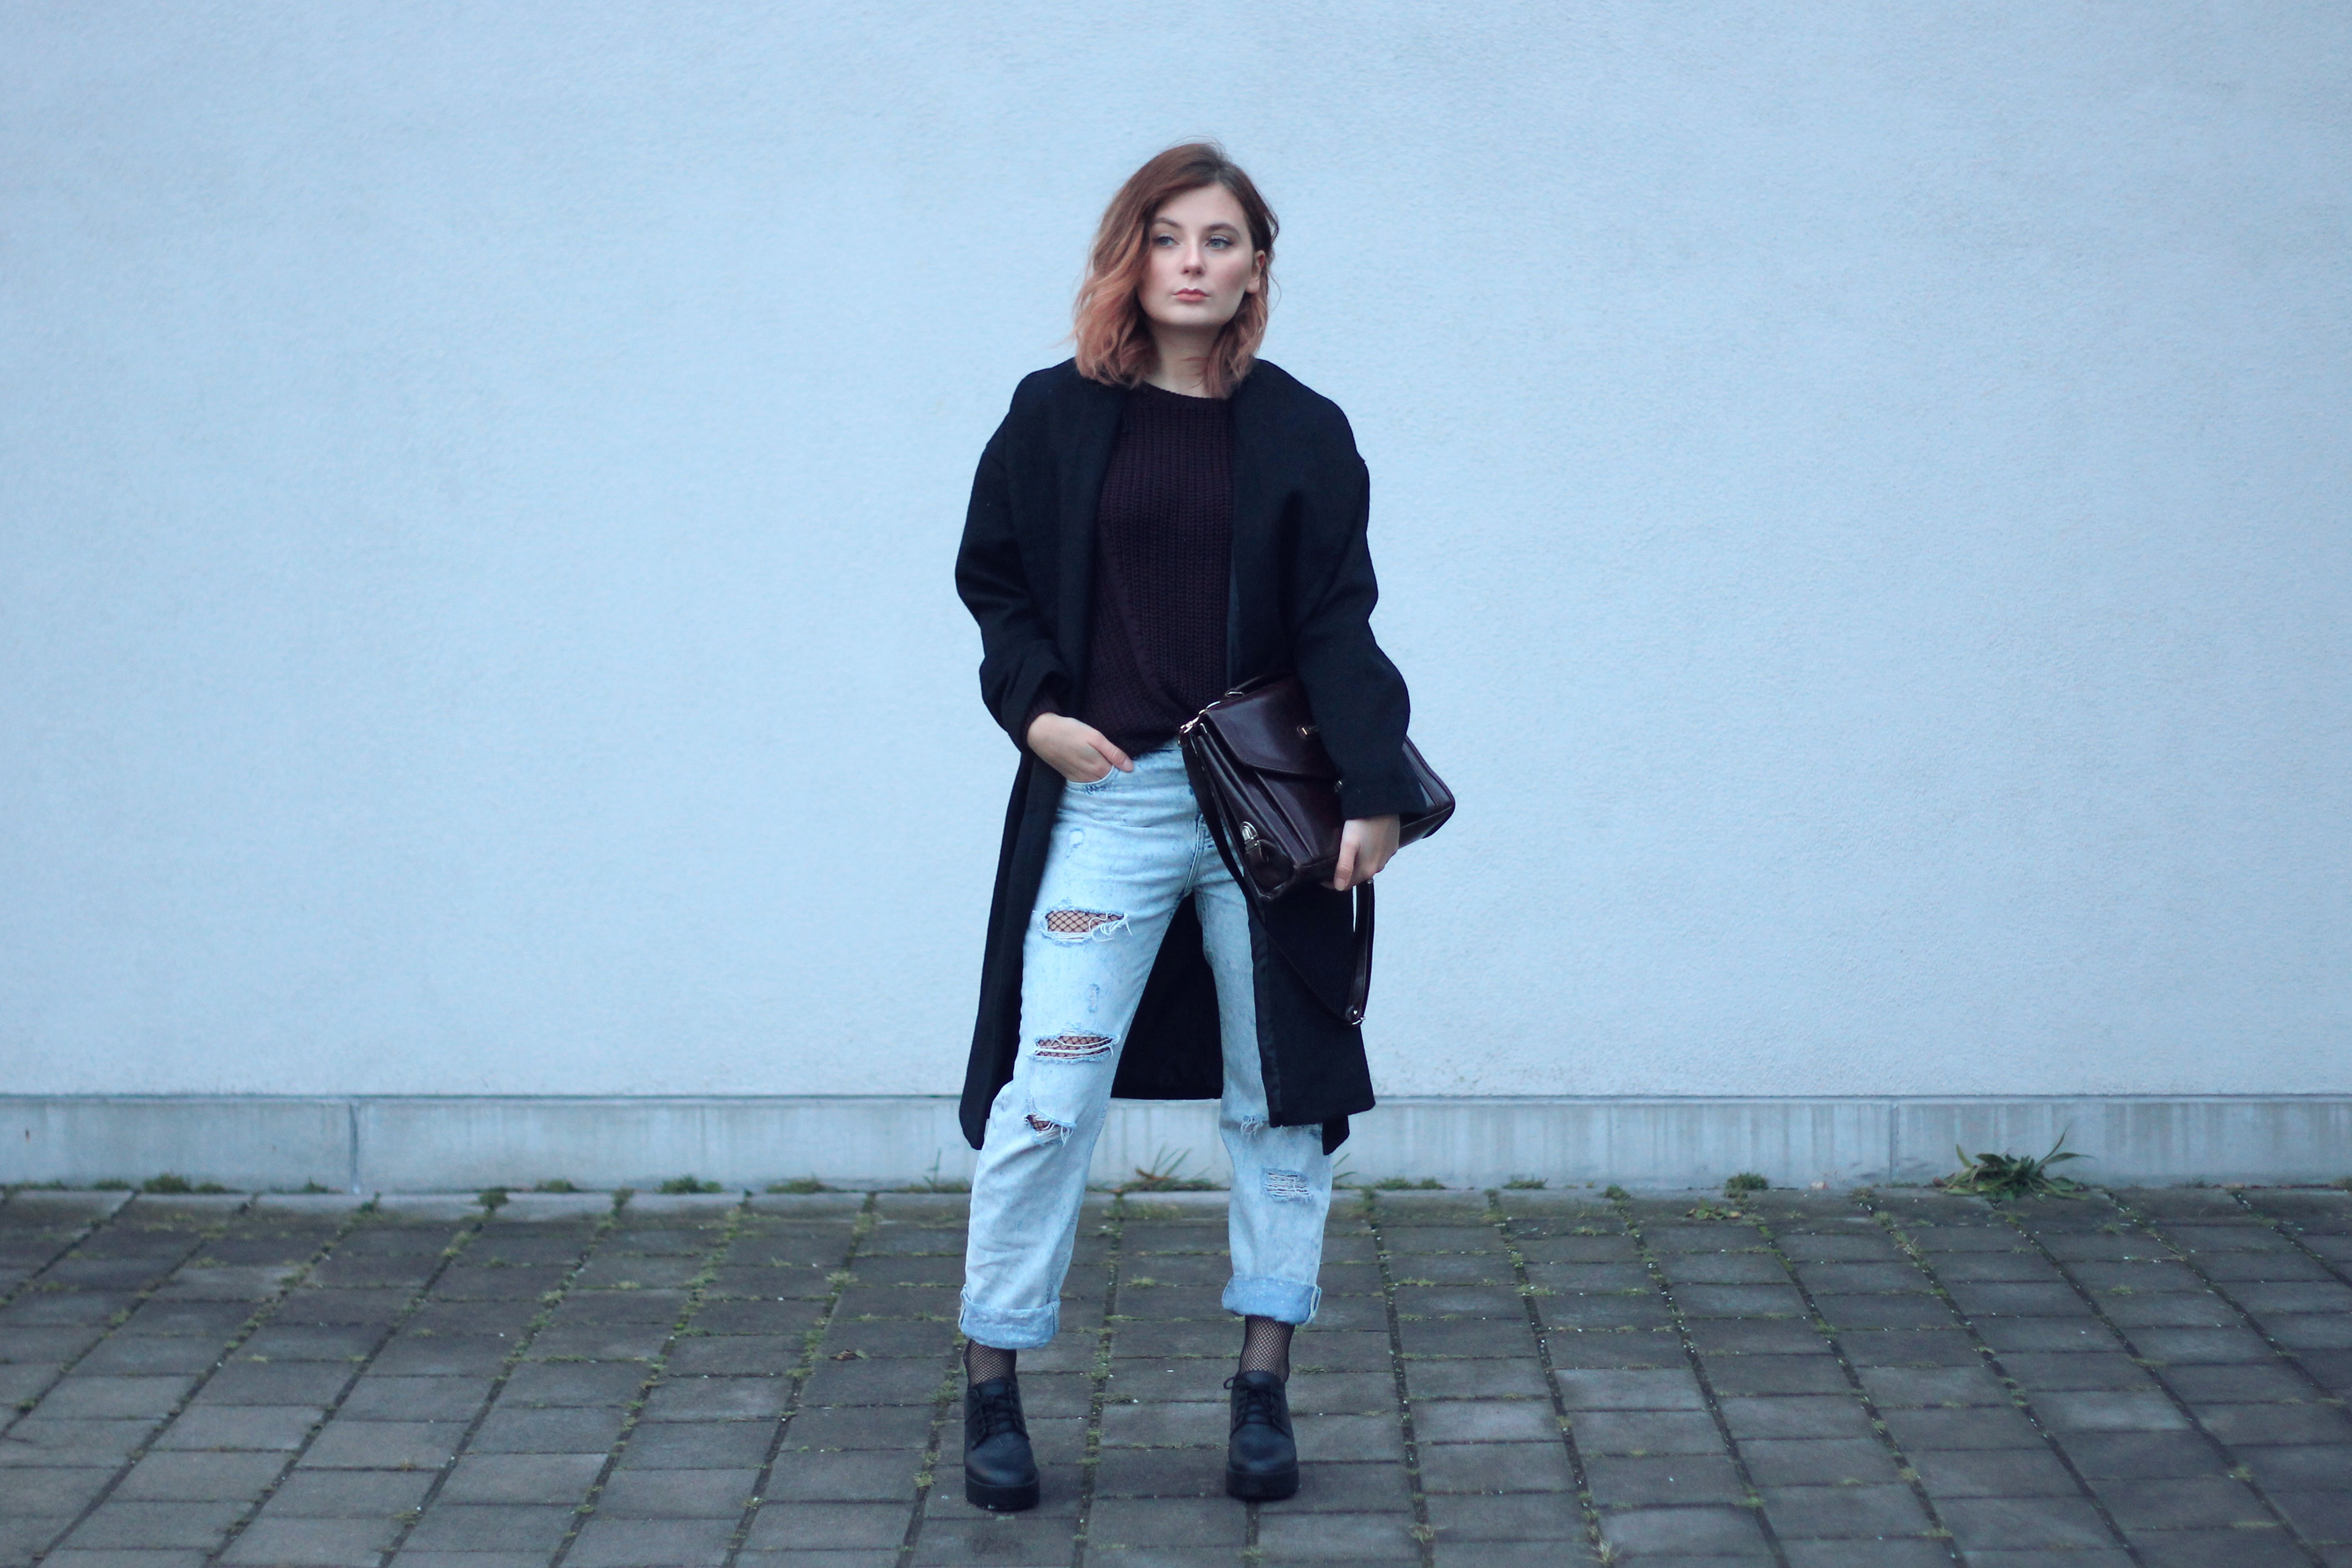 Netzstrumpfhosen Trend Outfit Boyfriend Jeans Coat outfit fashionblog modeblog fashionblogger instagram